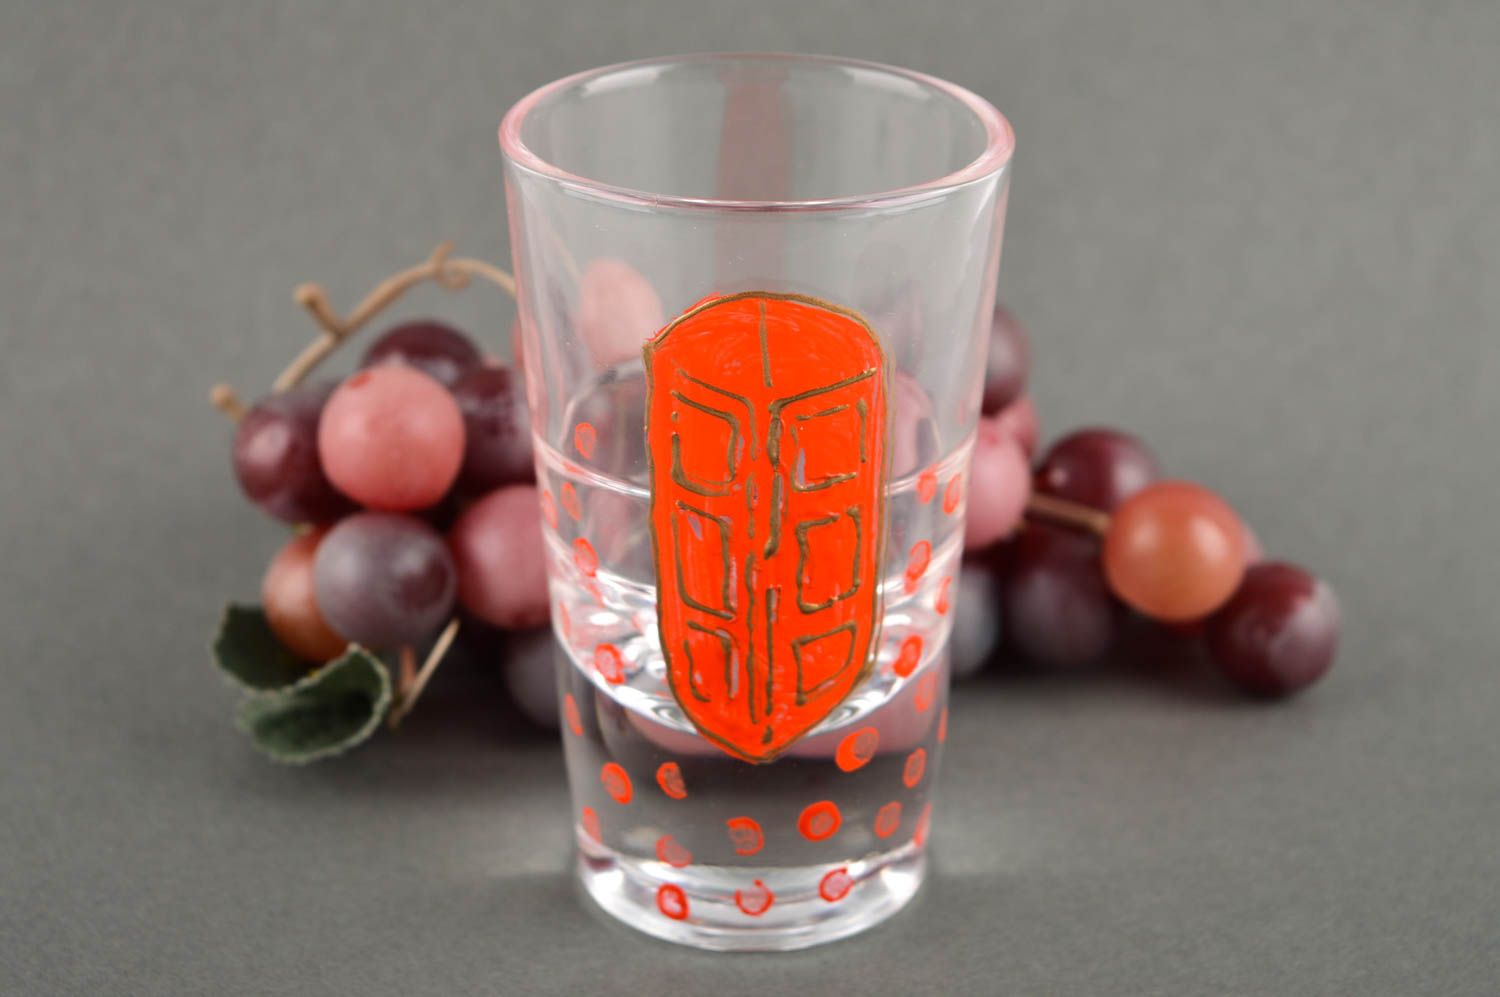 Copa de cristal vaso de chupito con dibujo hecho a mano elemento decorativo foto 1